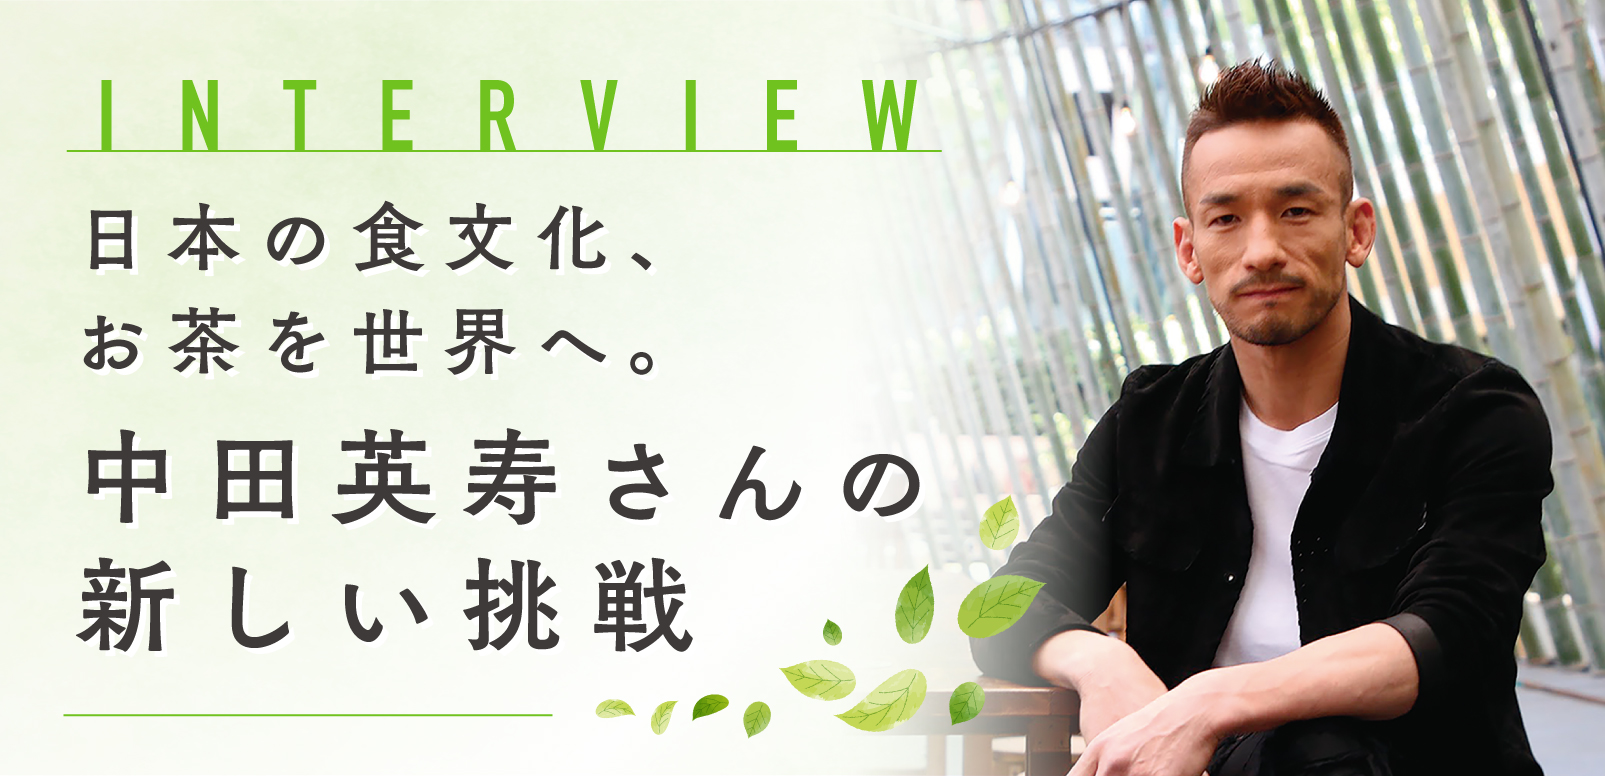 日本の食文化、お茶を世界へ。中田英寿さんの新しい挑戦 | SingaLife